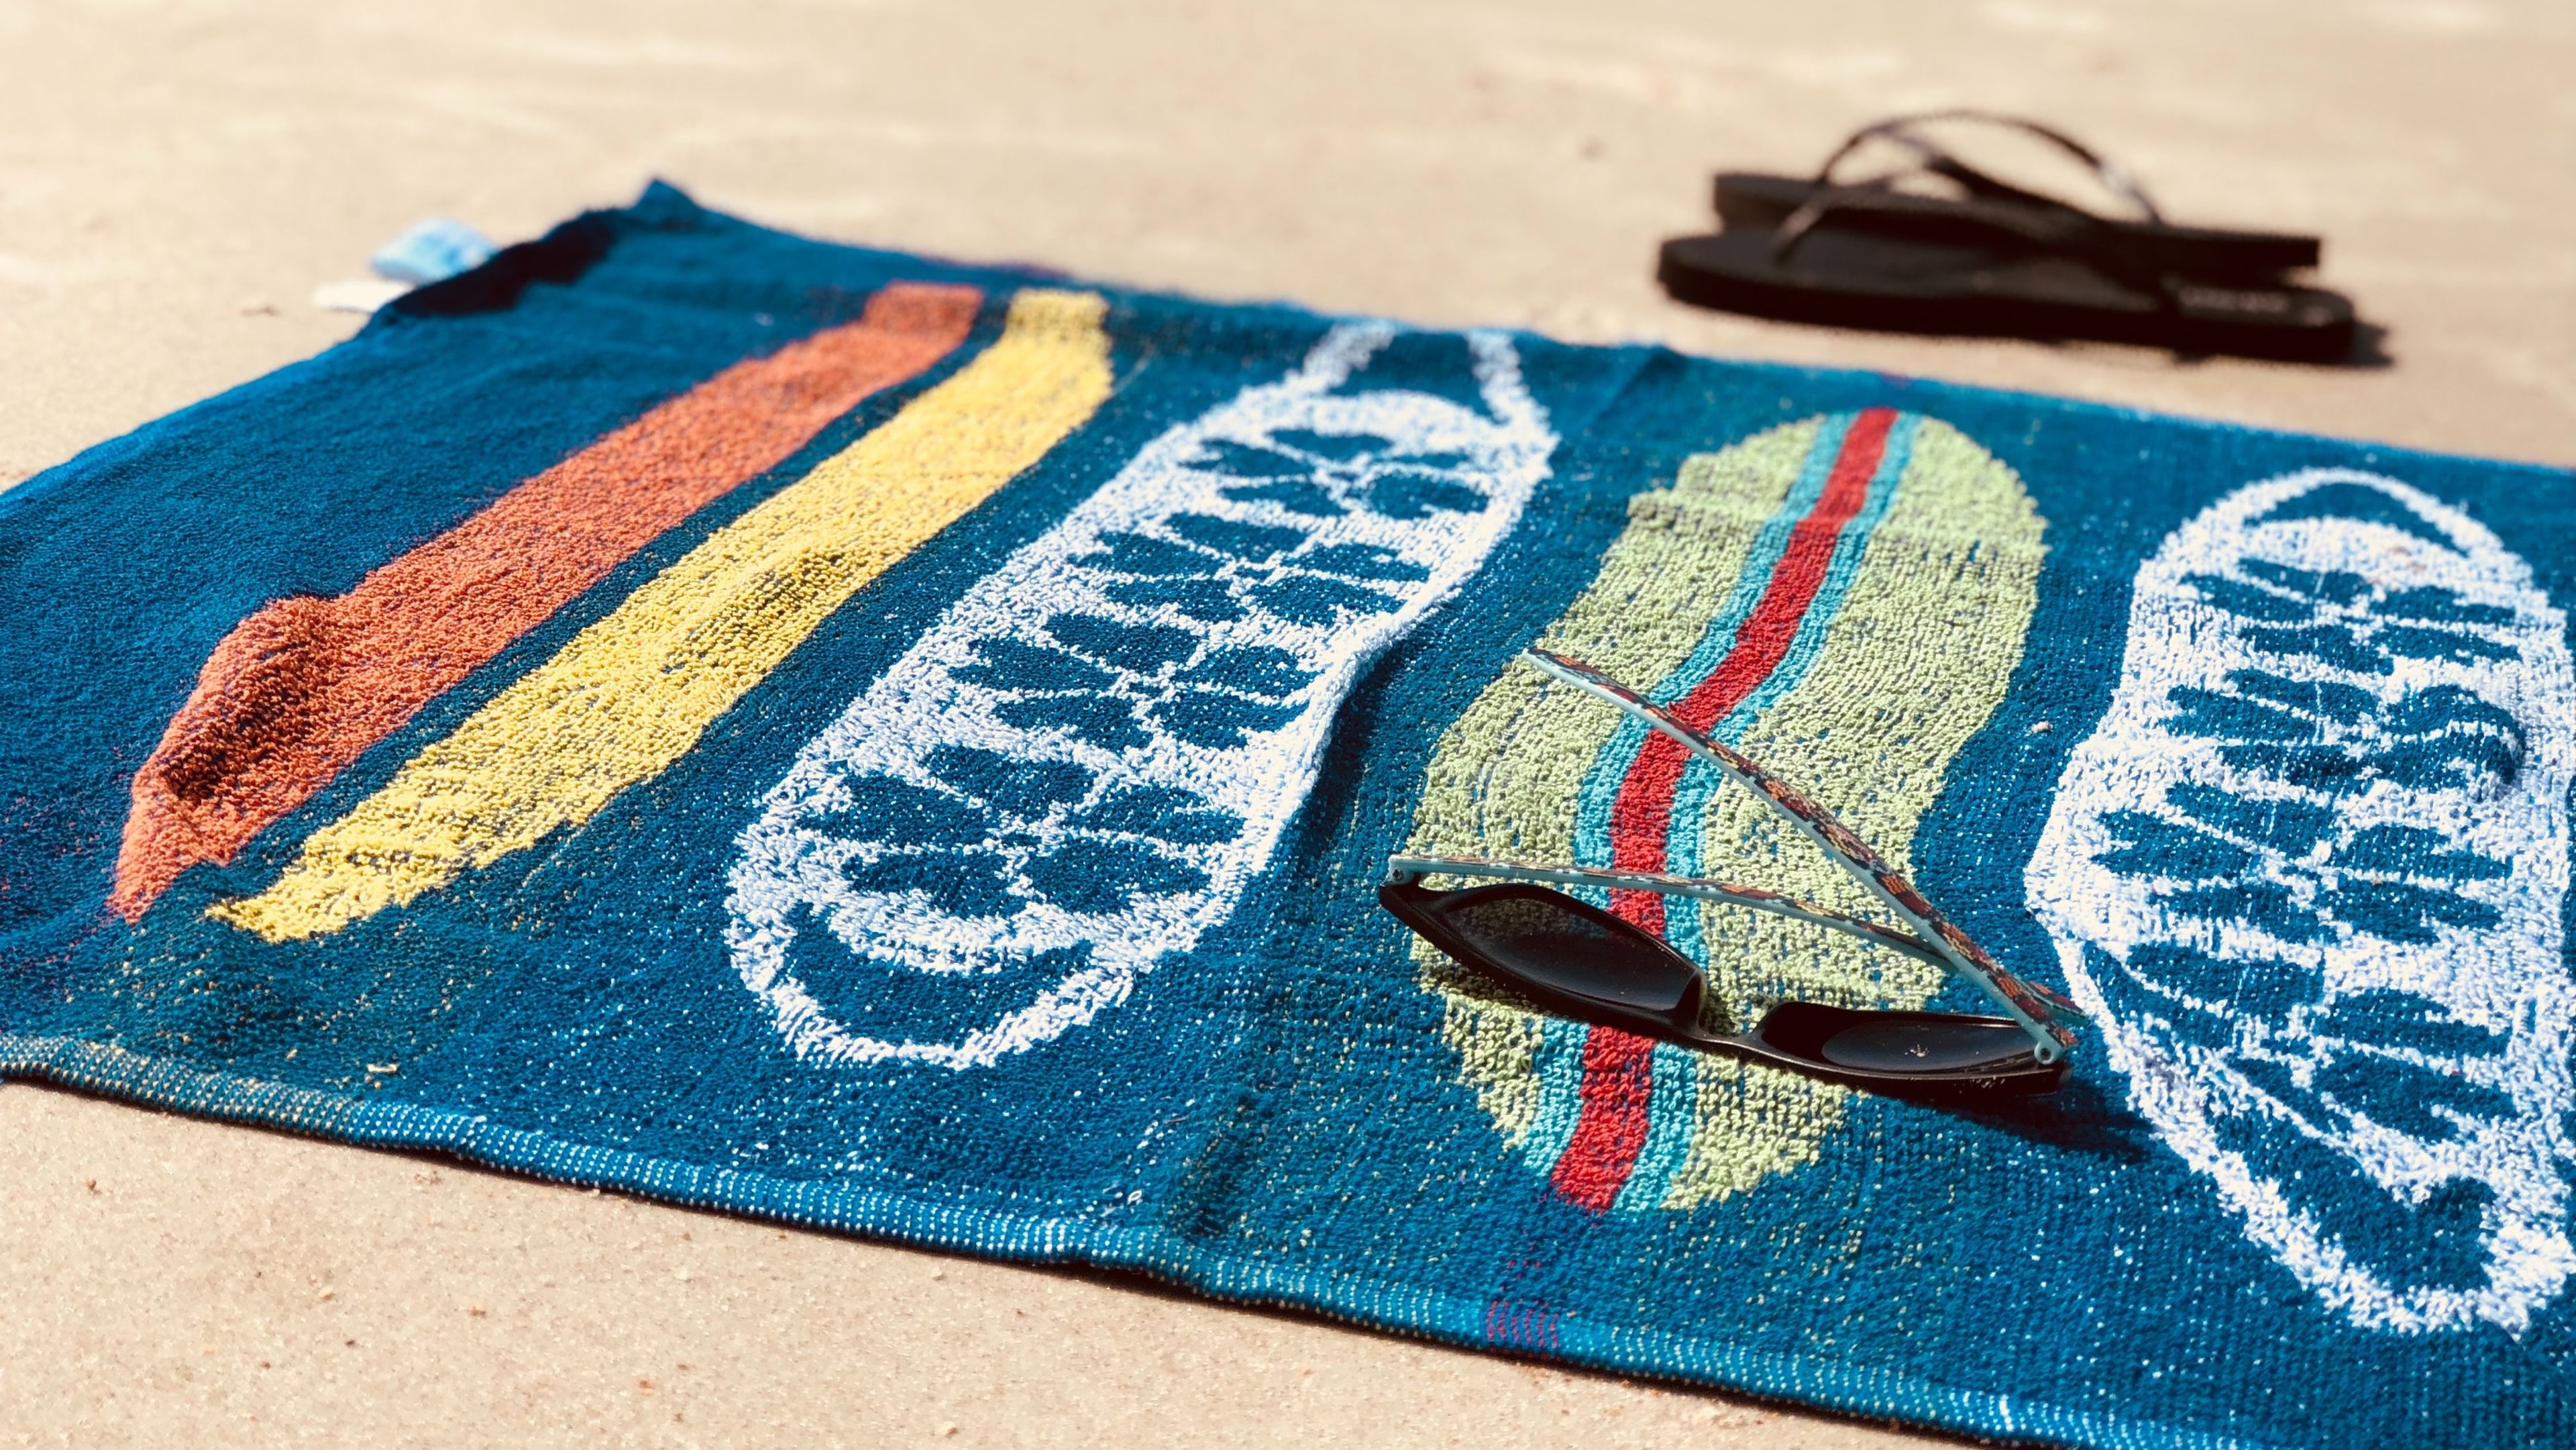 Toallas de playa: algo más que toallas